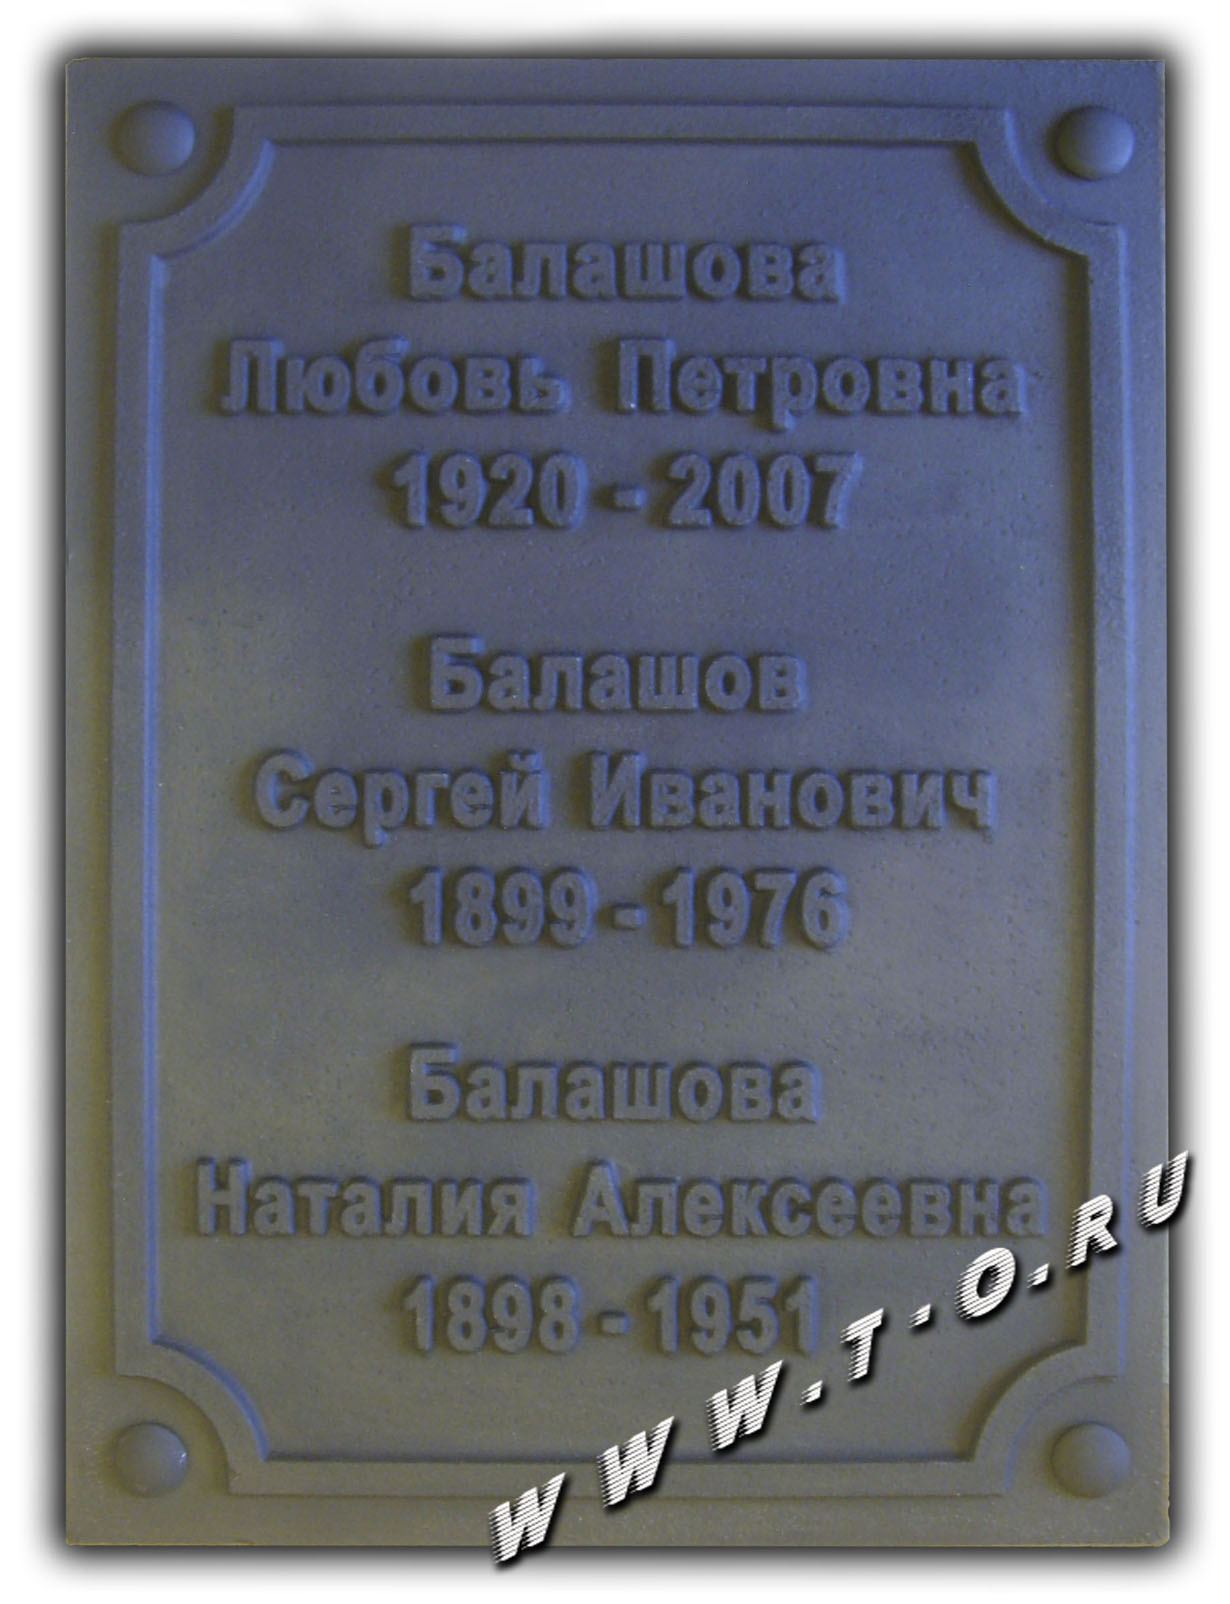 Надгробная табличка из чугуна с памятными датами для установки на камень. Буквы текста - выпуклые. Изготовлена памятная доска (табличка) по технологии художественного литья в формах.